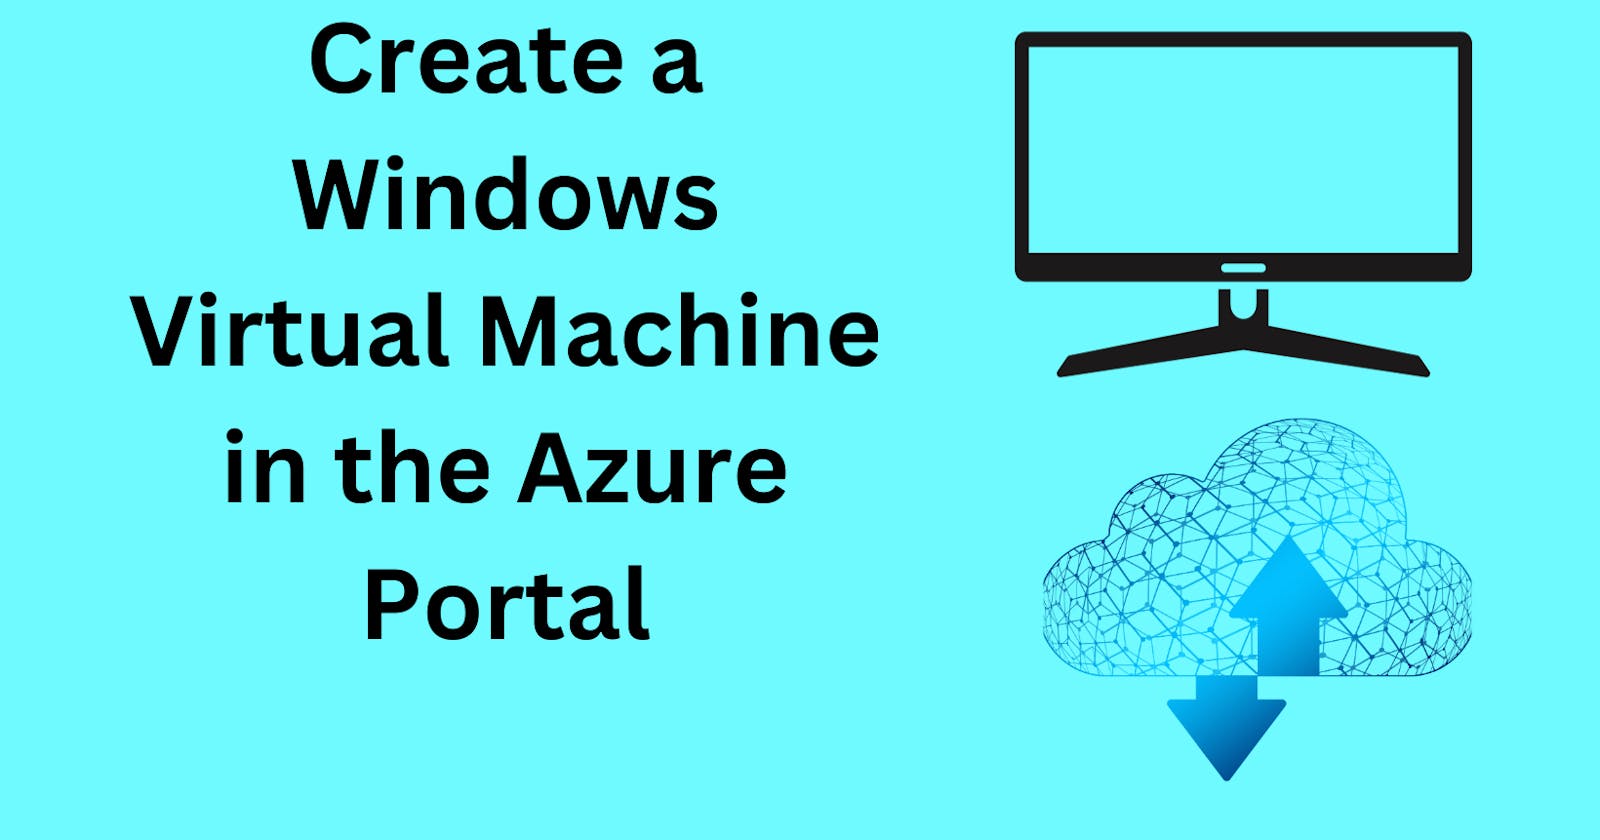 Create a Windows virtual machine in the Azure portal